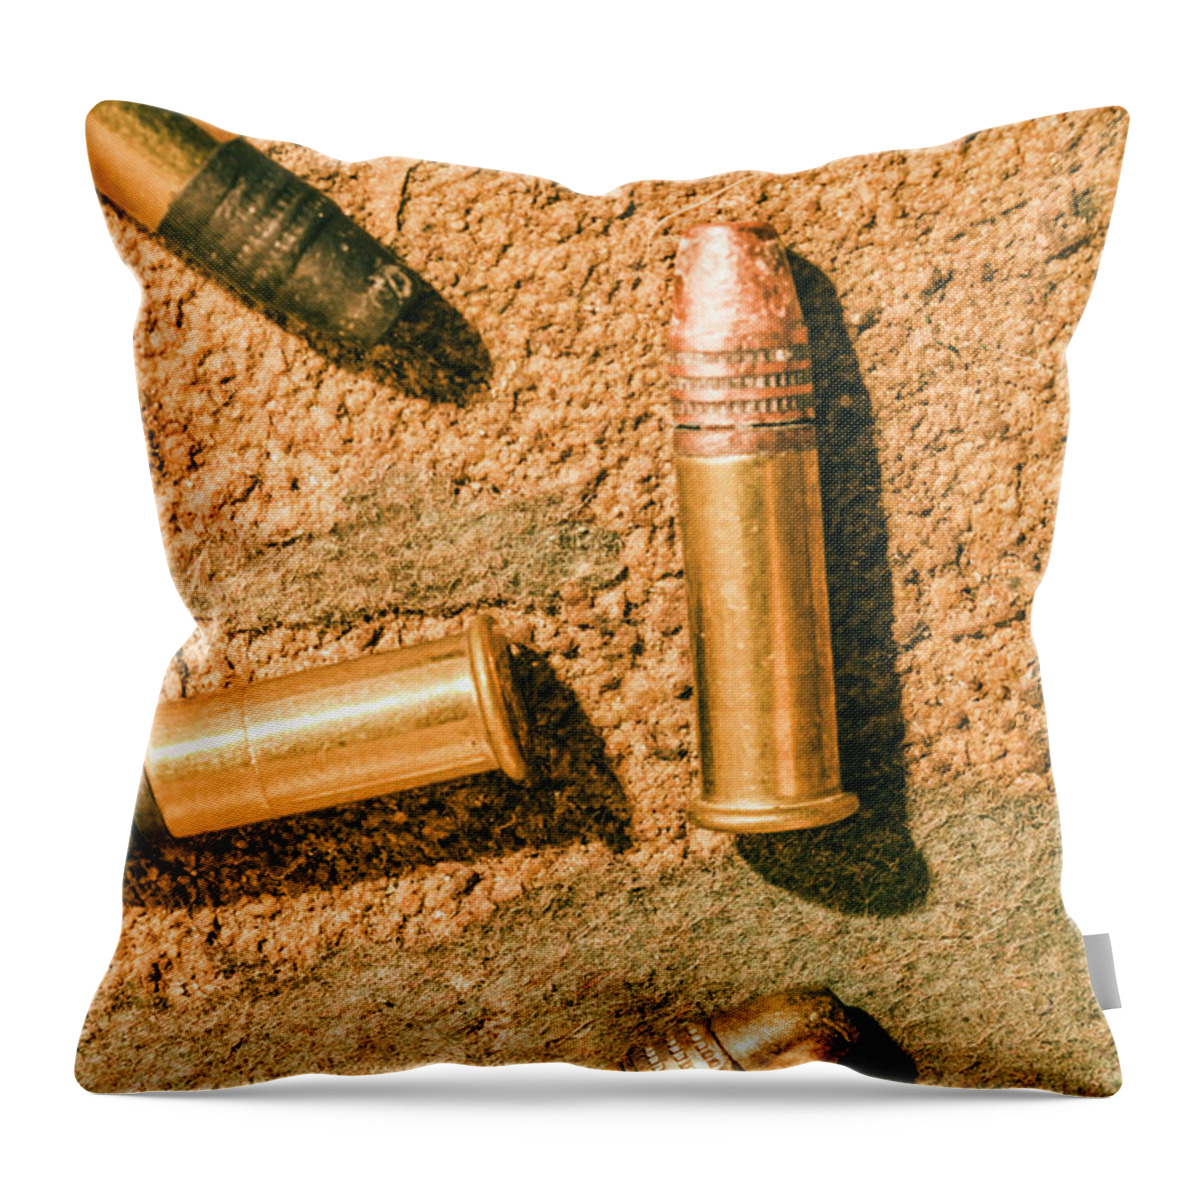 Gun Throw Pillow featuring the photograph A higher calibre by Jorgo Photography